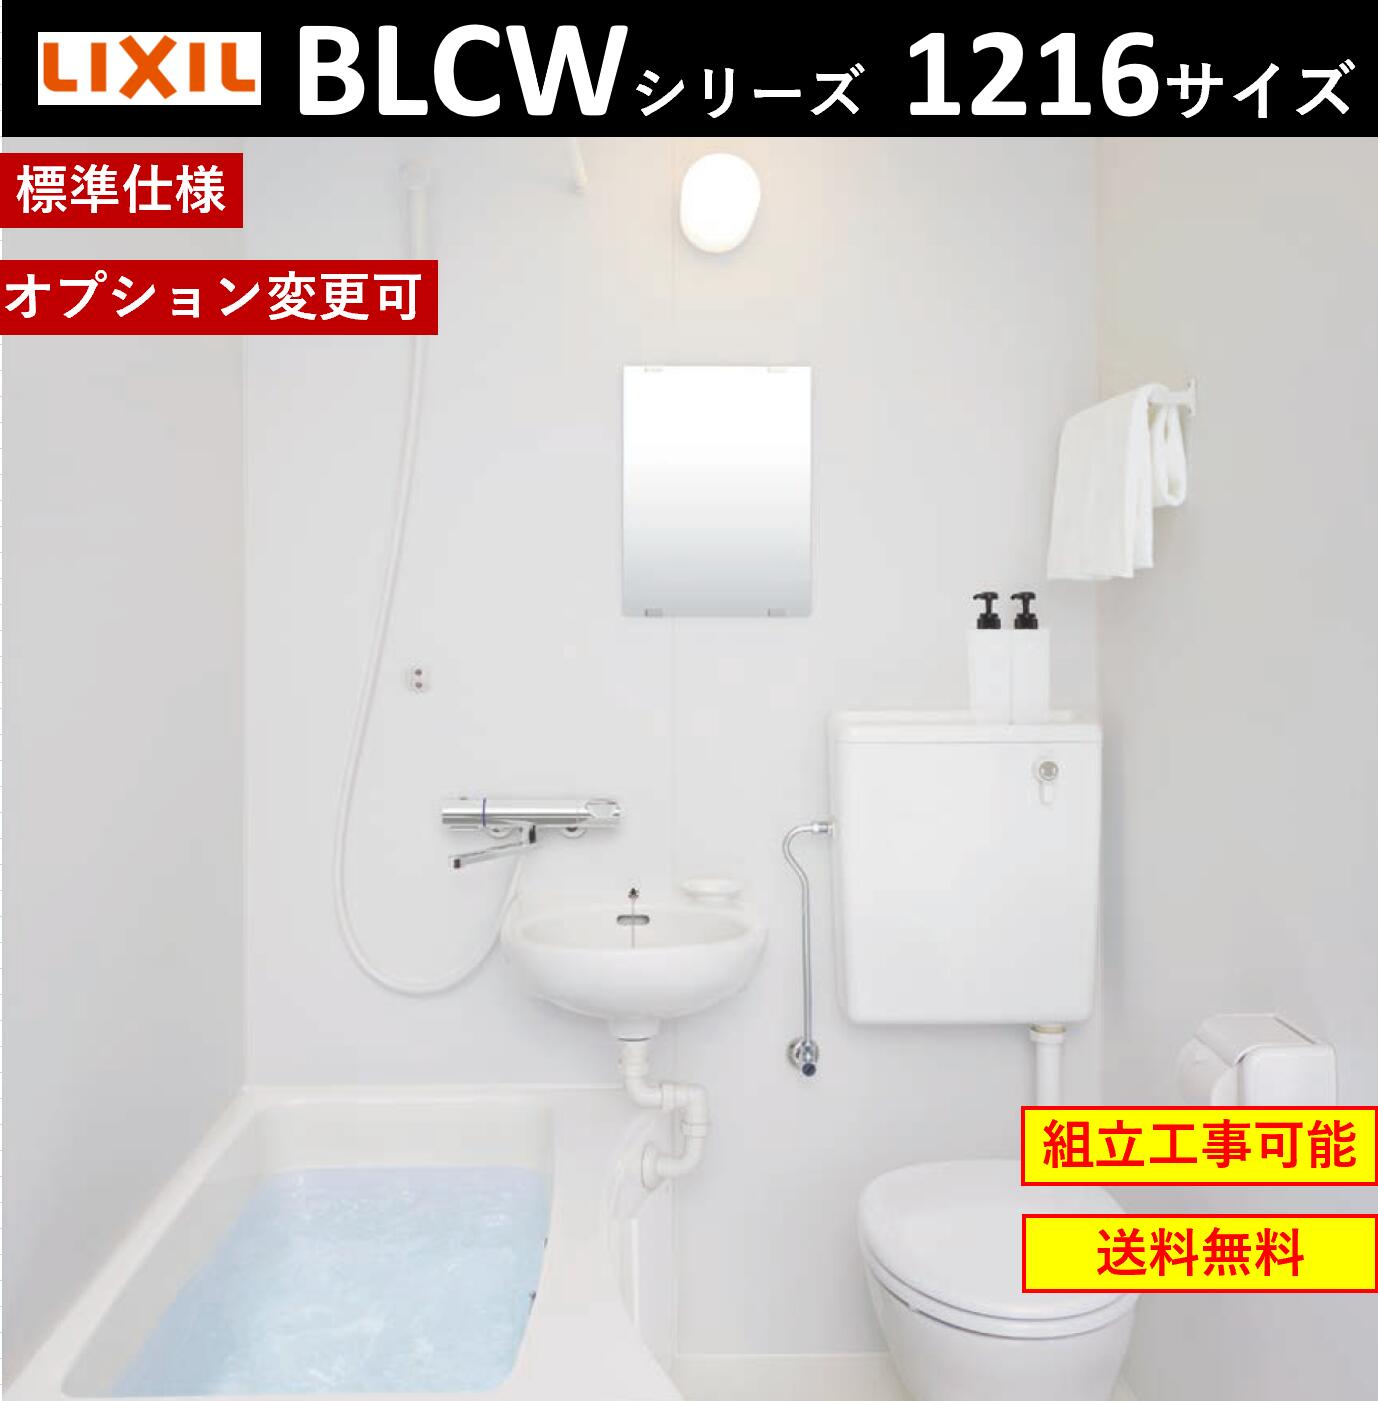 【直販激安】★LIXILホテル向け洗面・便器付ユニットバス★BLCW-1115サイズ ユニットバス